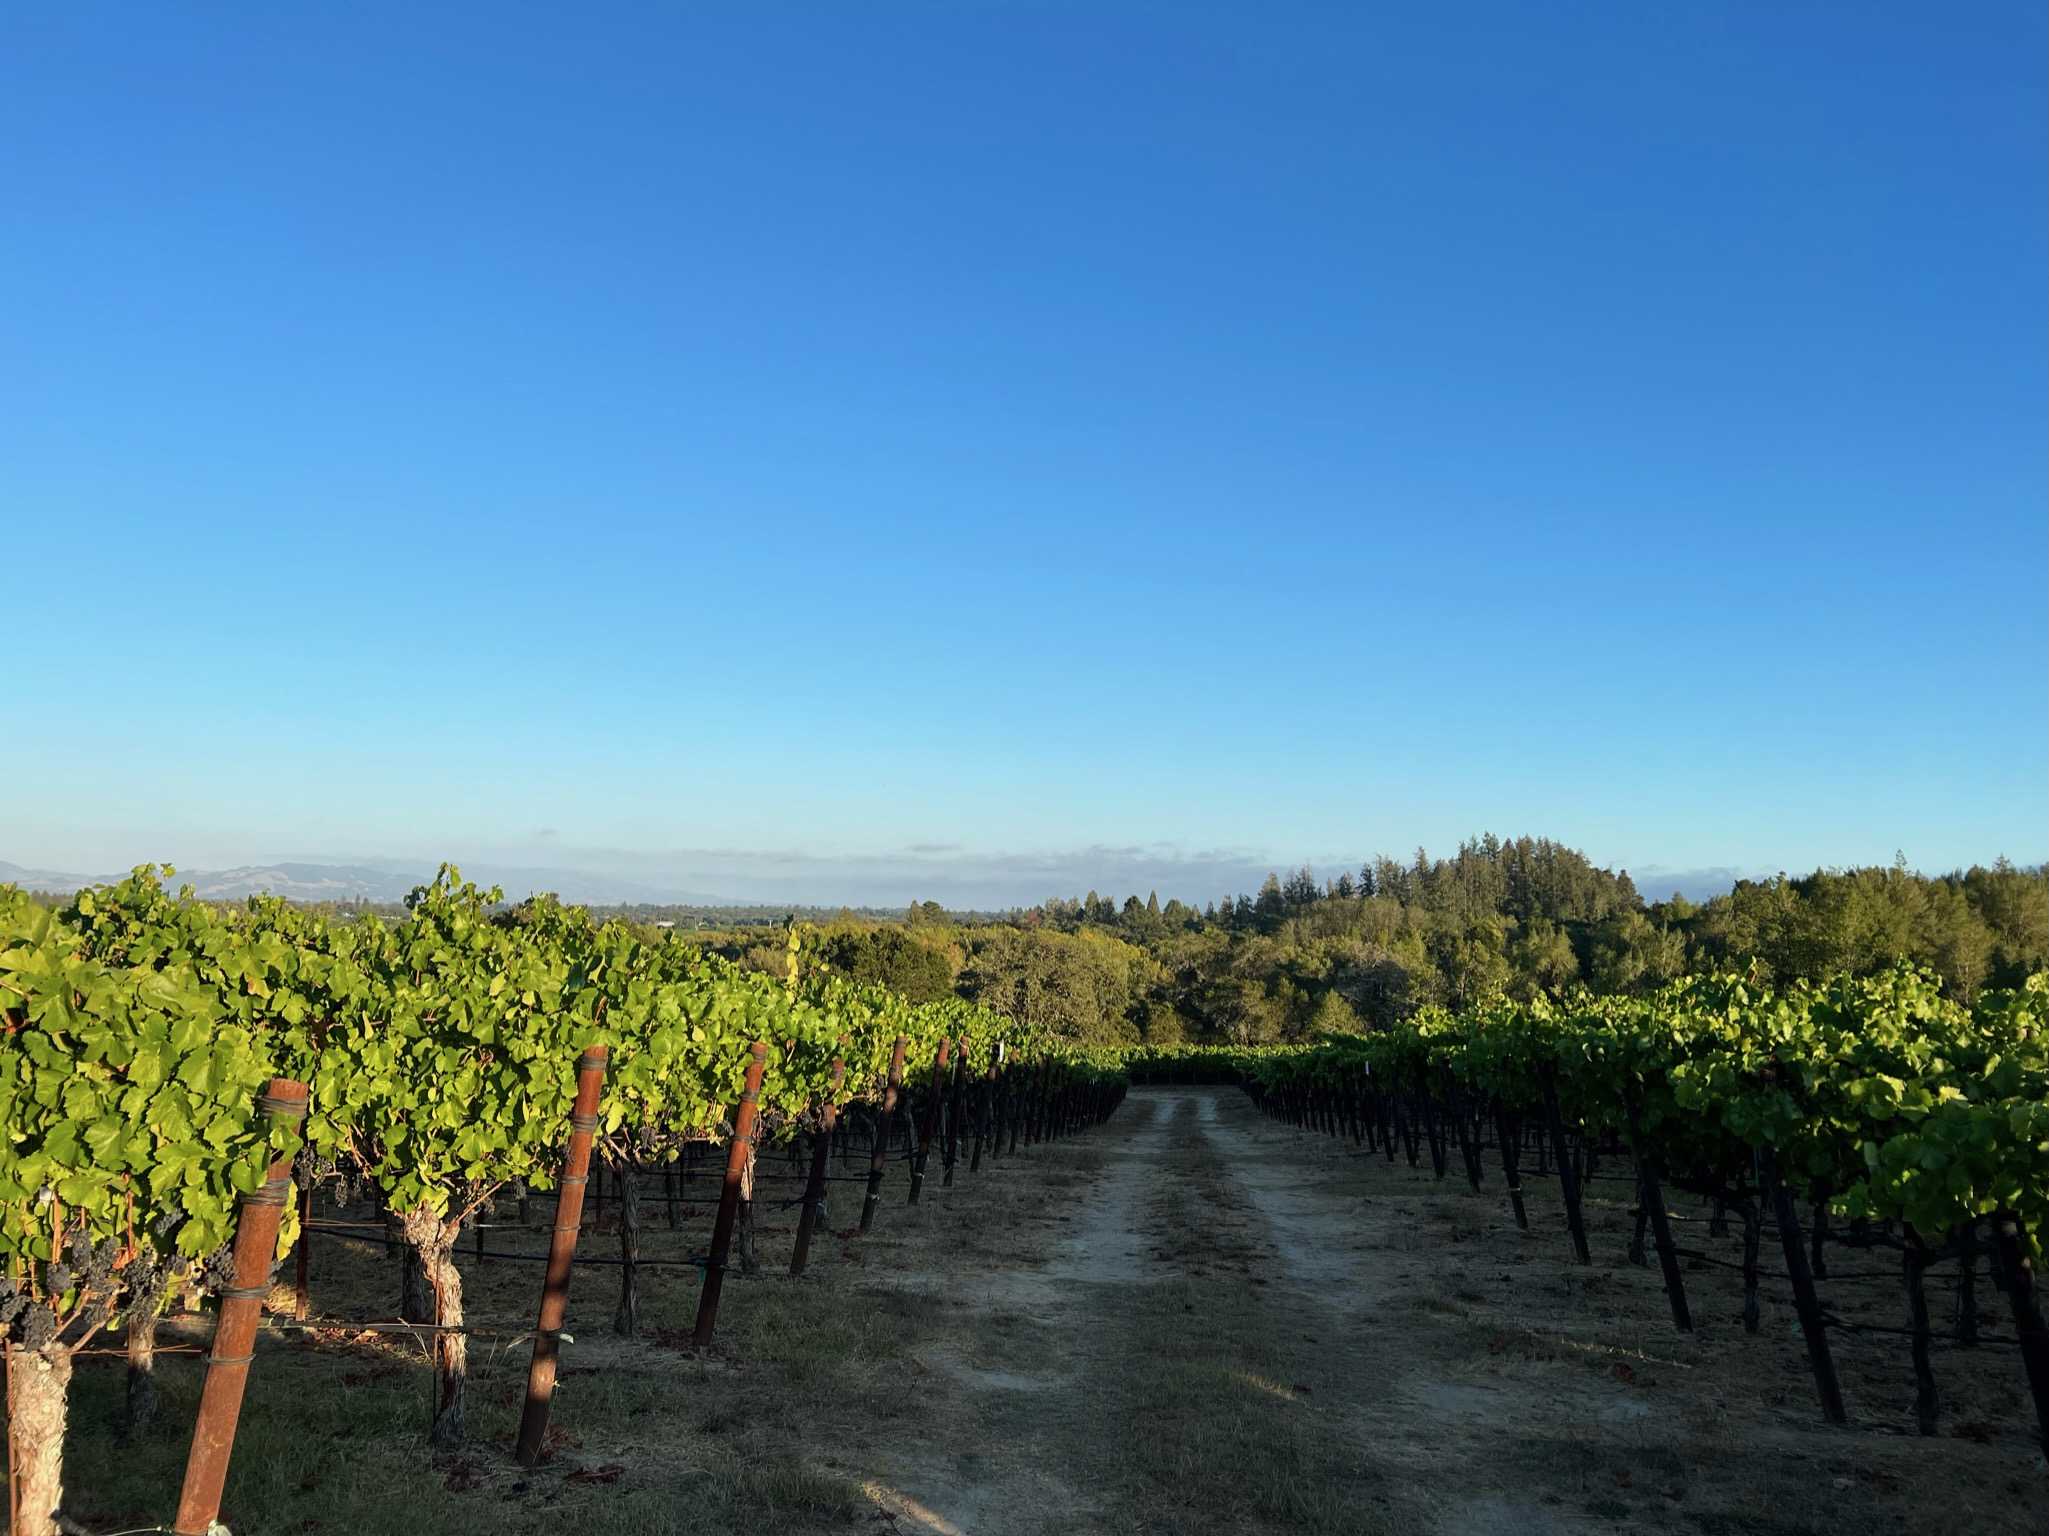 Morning at the vineyard